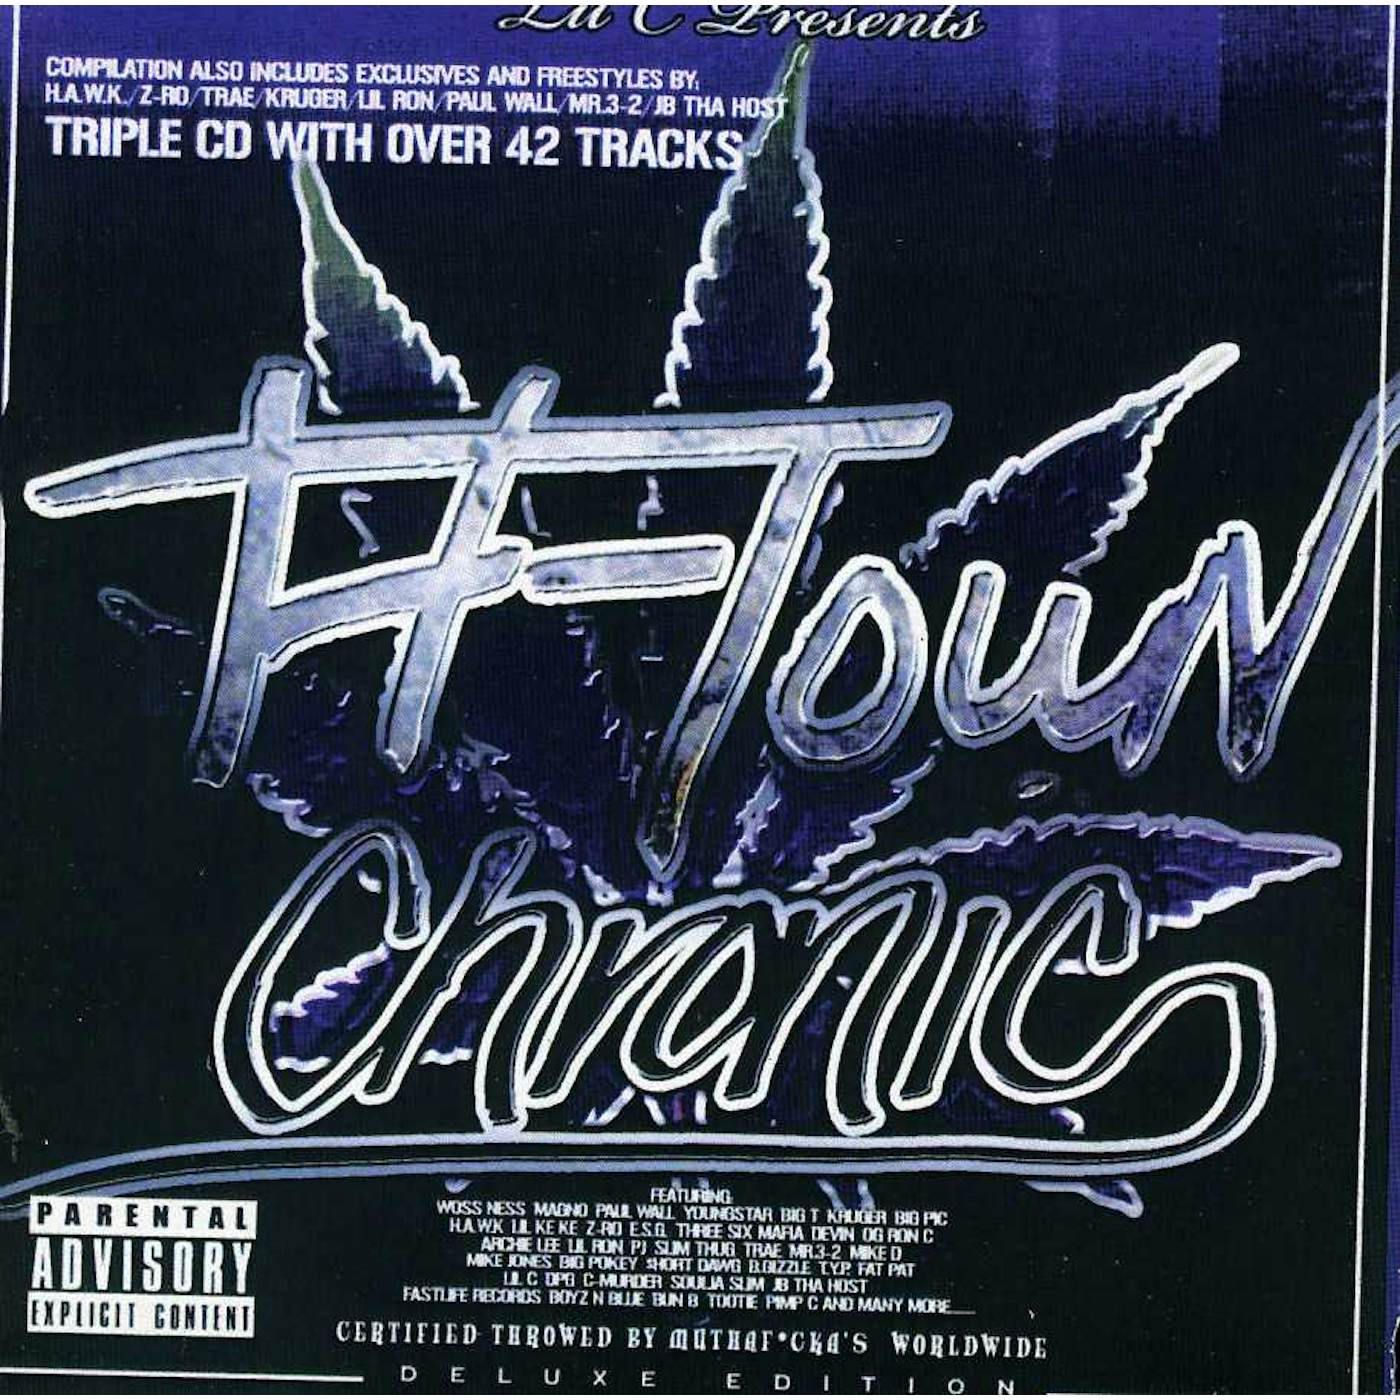 Lil C H TOWN CHRONIC CD